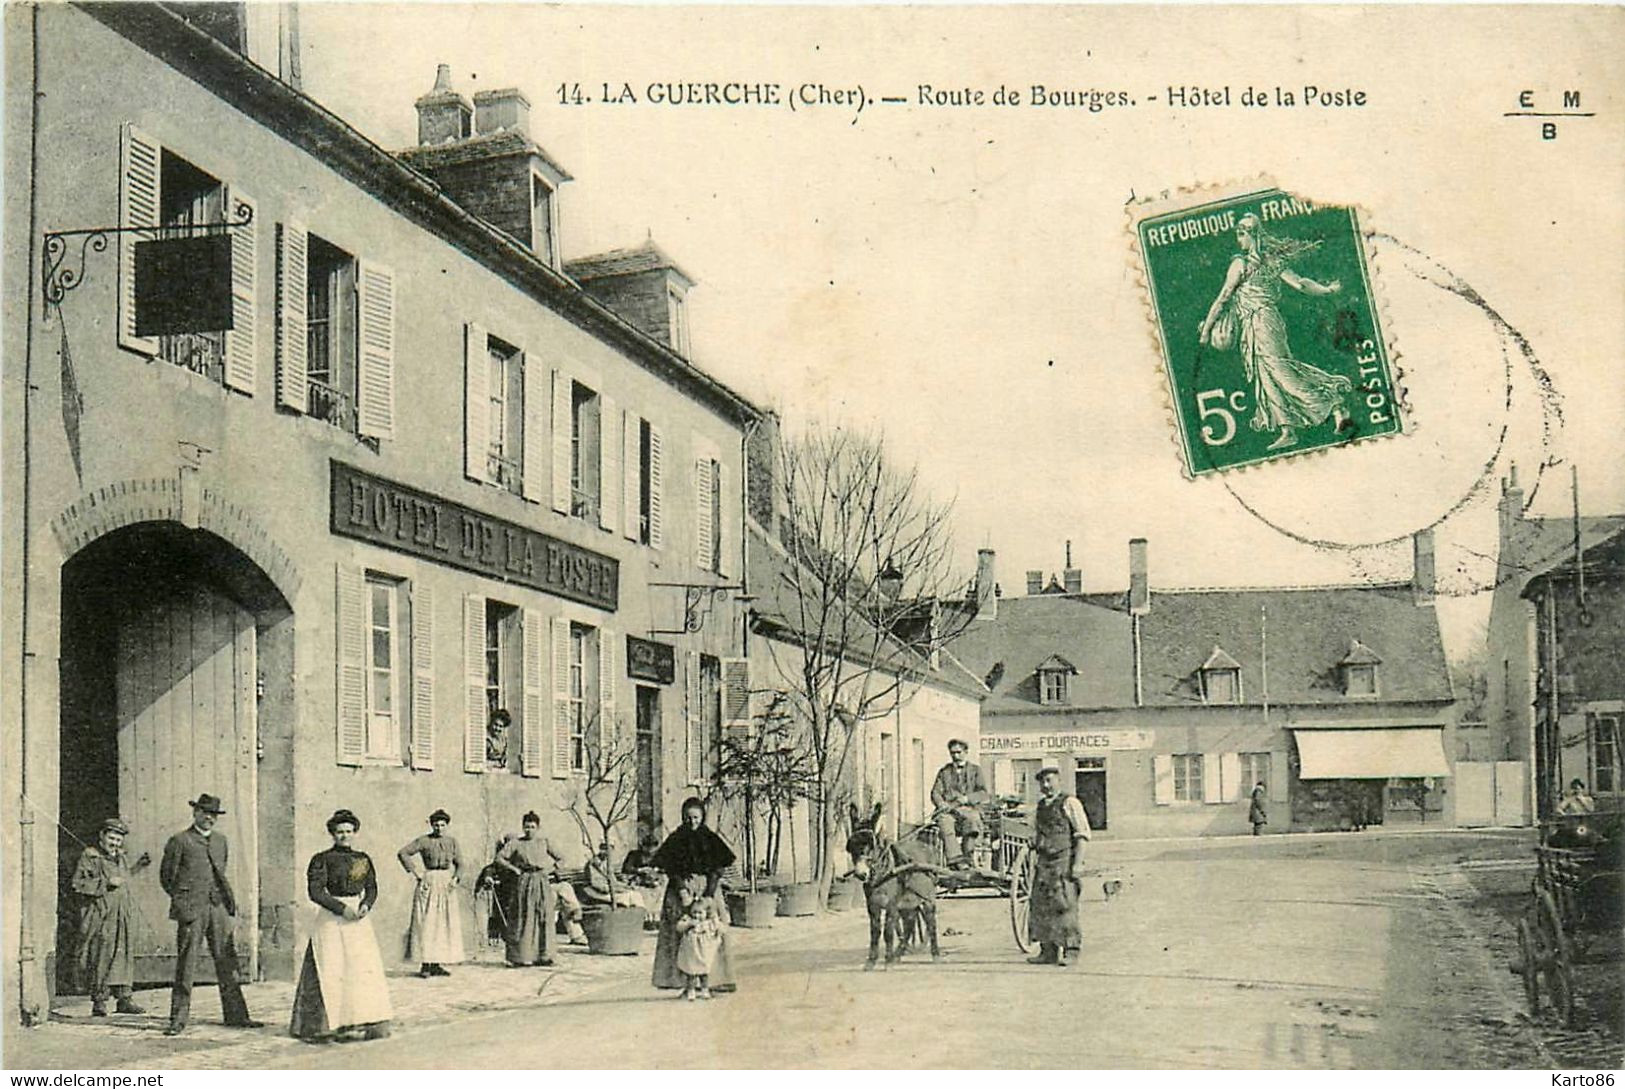 La Guerche * La Route De Bourges * Façade De L'hôtel De La Poste * Attelage * Villageois - La Guerche Sur L'Aubois